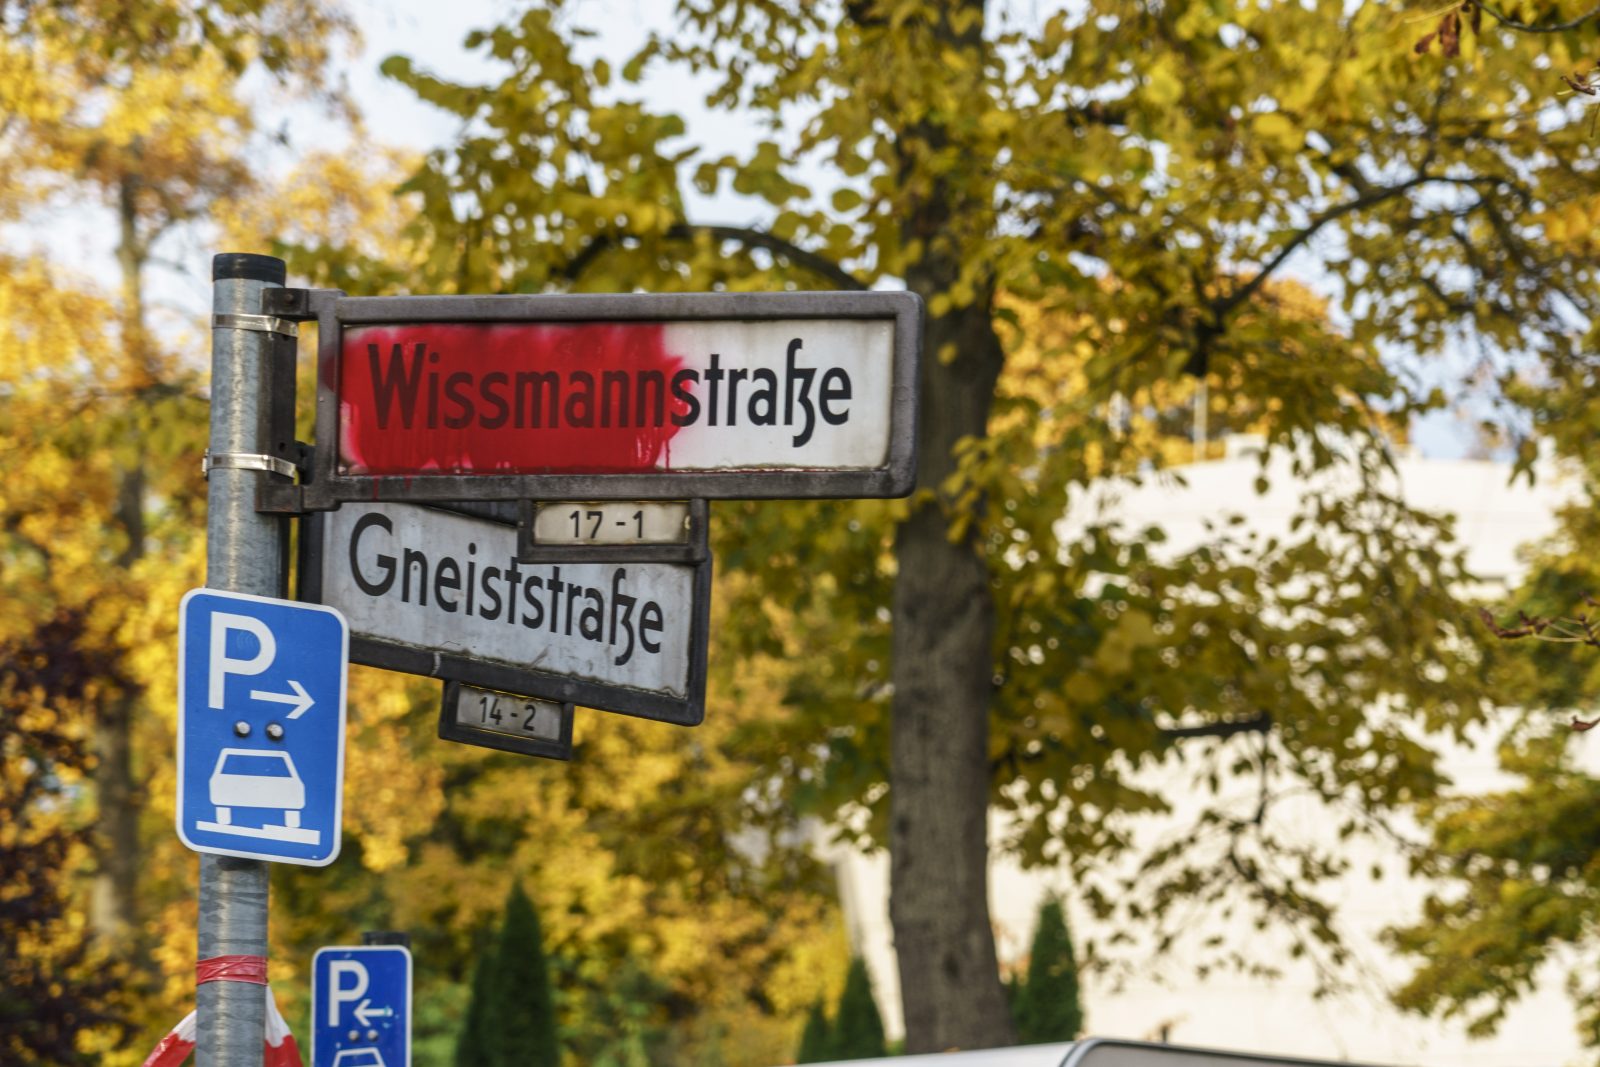 Die Wissmannstraße in Berlin soll umbenannt werden Foto: picture alliance / Gobal Travel Images | Gobal Travel Images